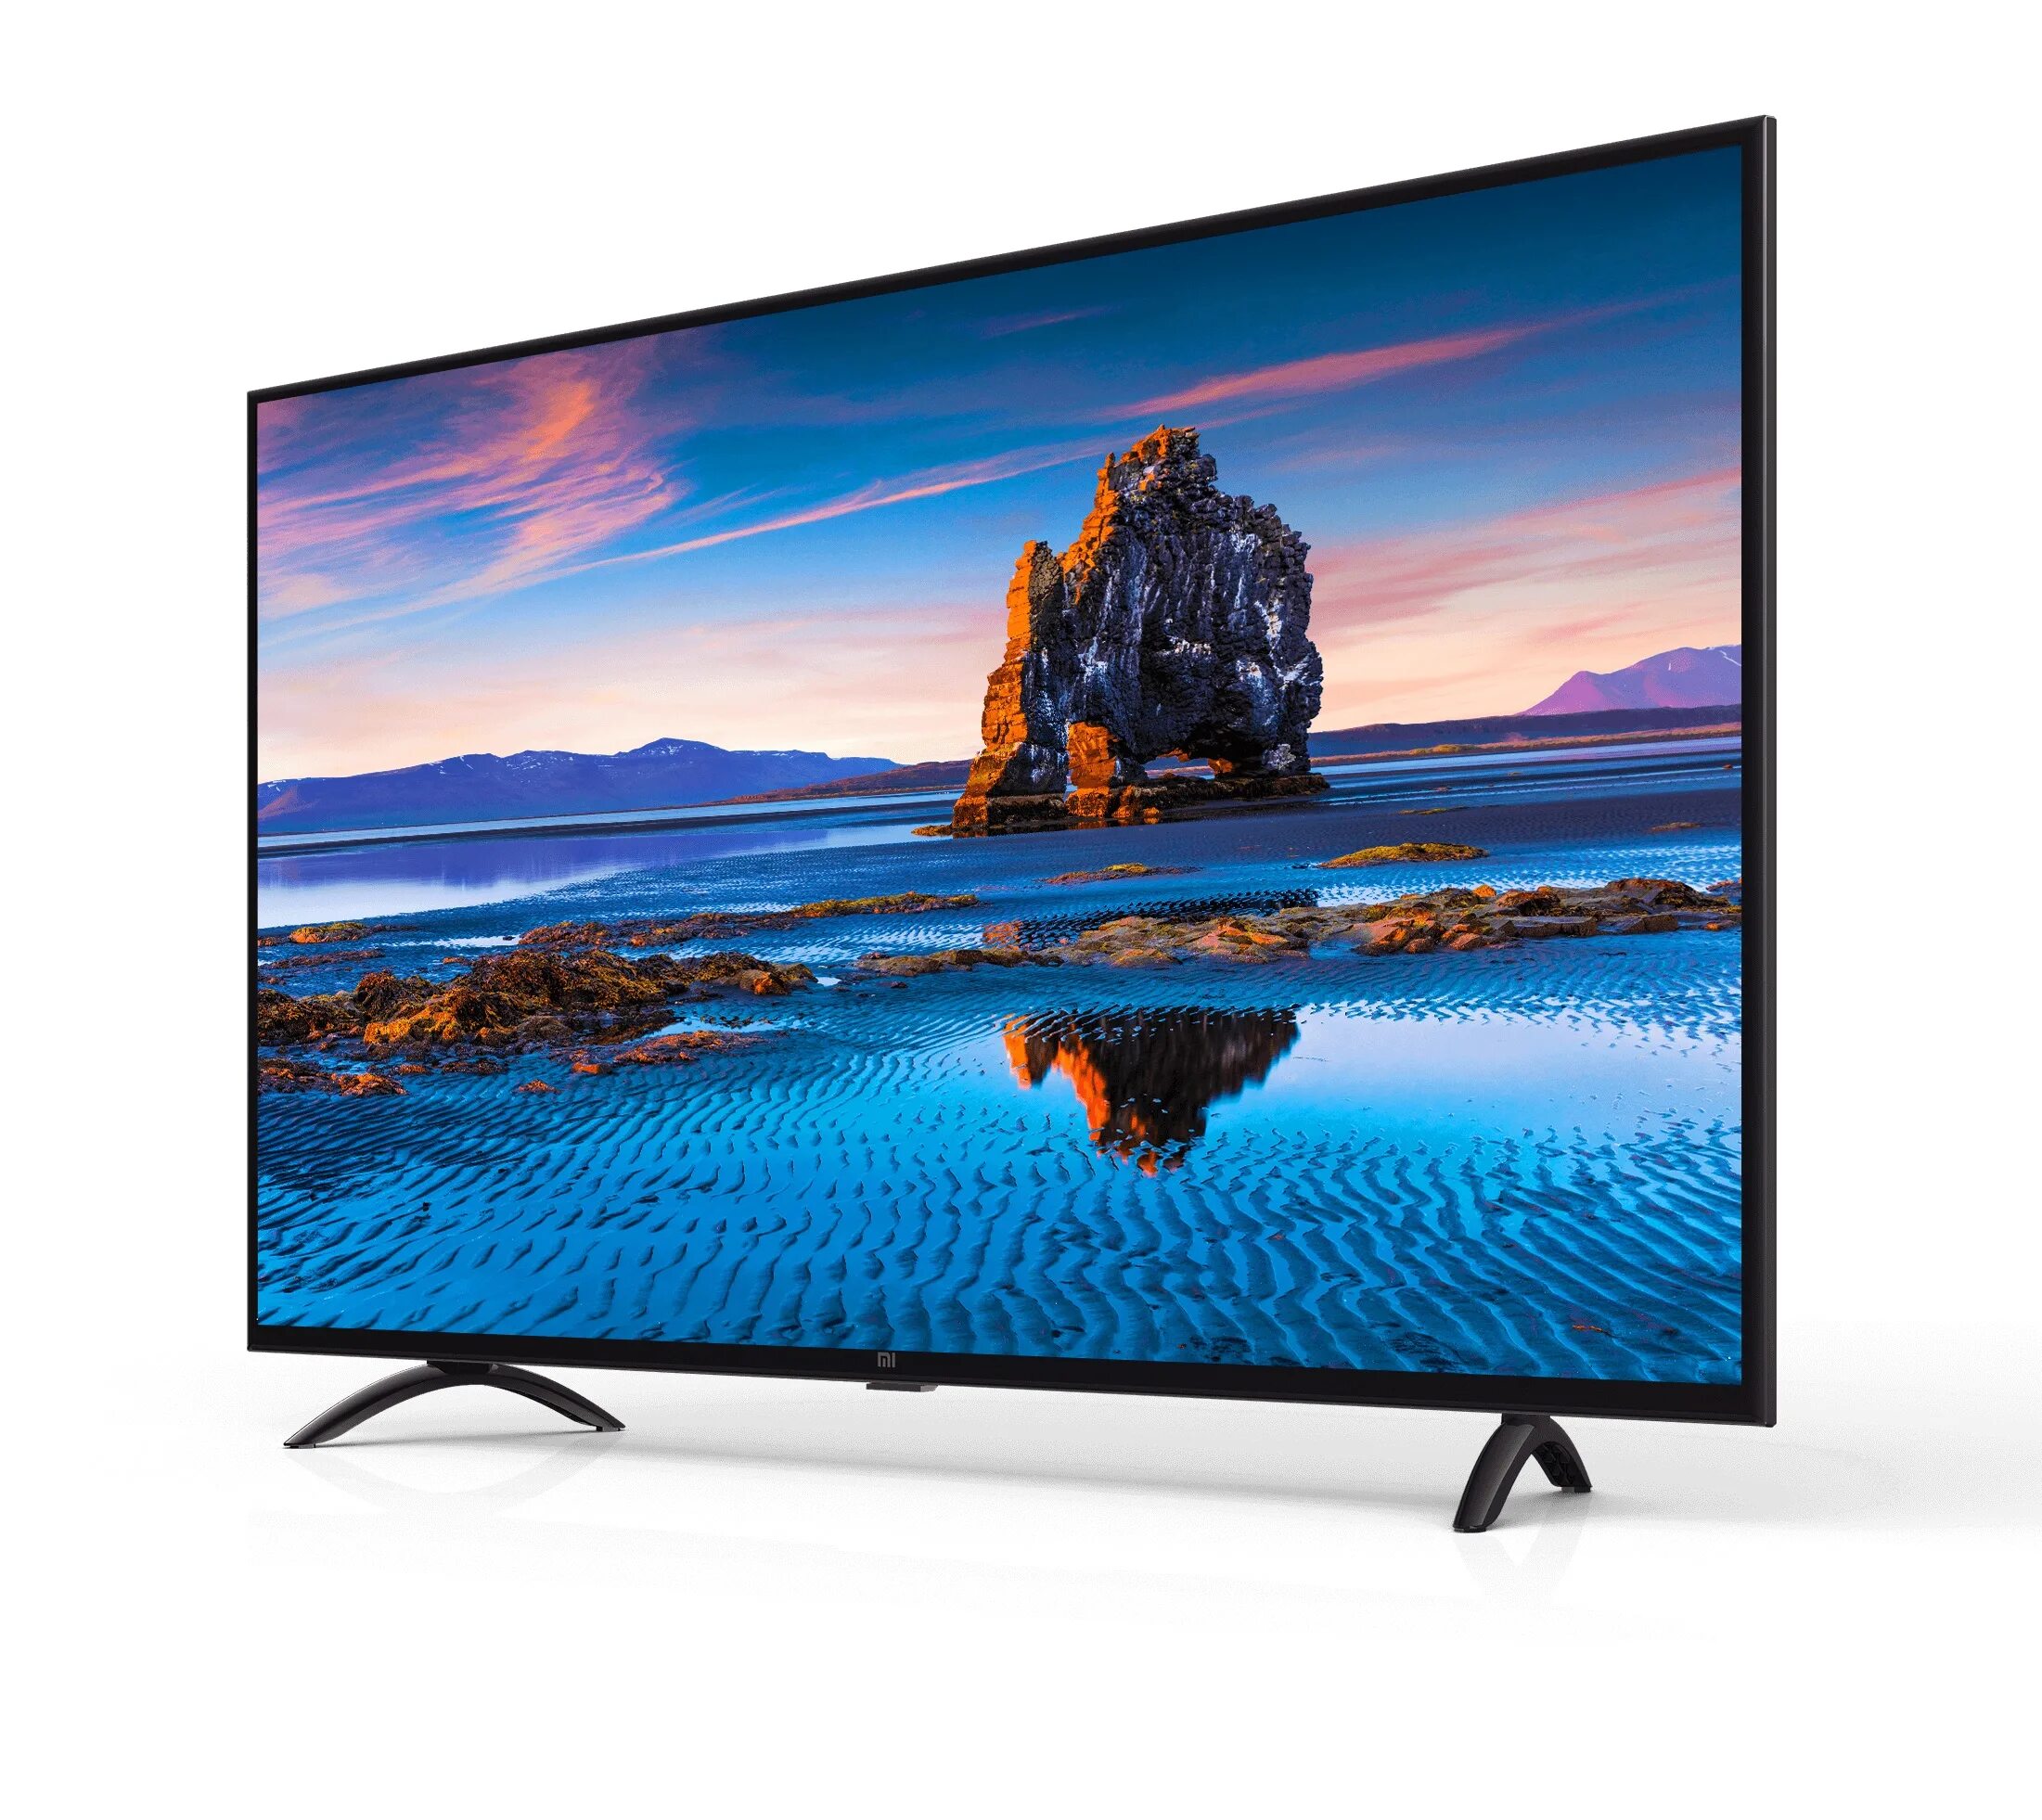 Купить в москве телевизор 55 дюймов недорого. Телевизор Xiaomi 32 дюйма смарт. Телевизор хиаоми 43 дюйма смарт. Телевизор со смарт ТВ ксиоми 32 дюйма. Телевизор Xiaomi mi TV 4a 43 t2 43" (2020).